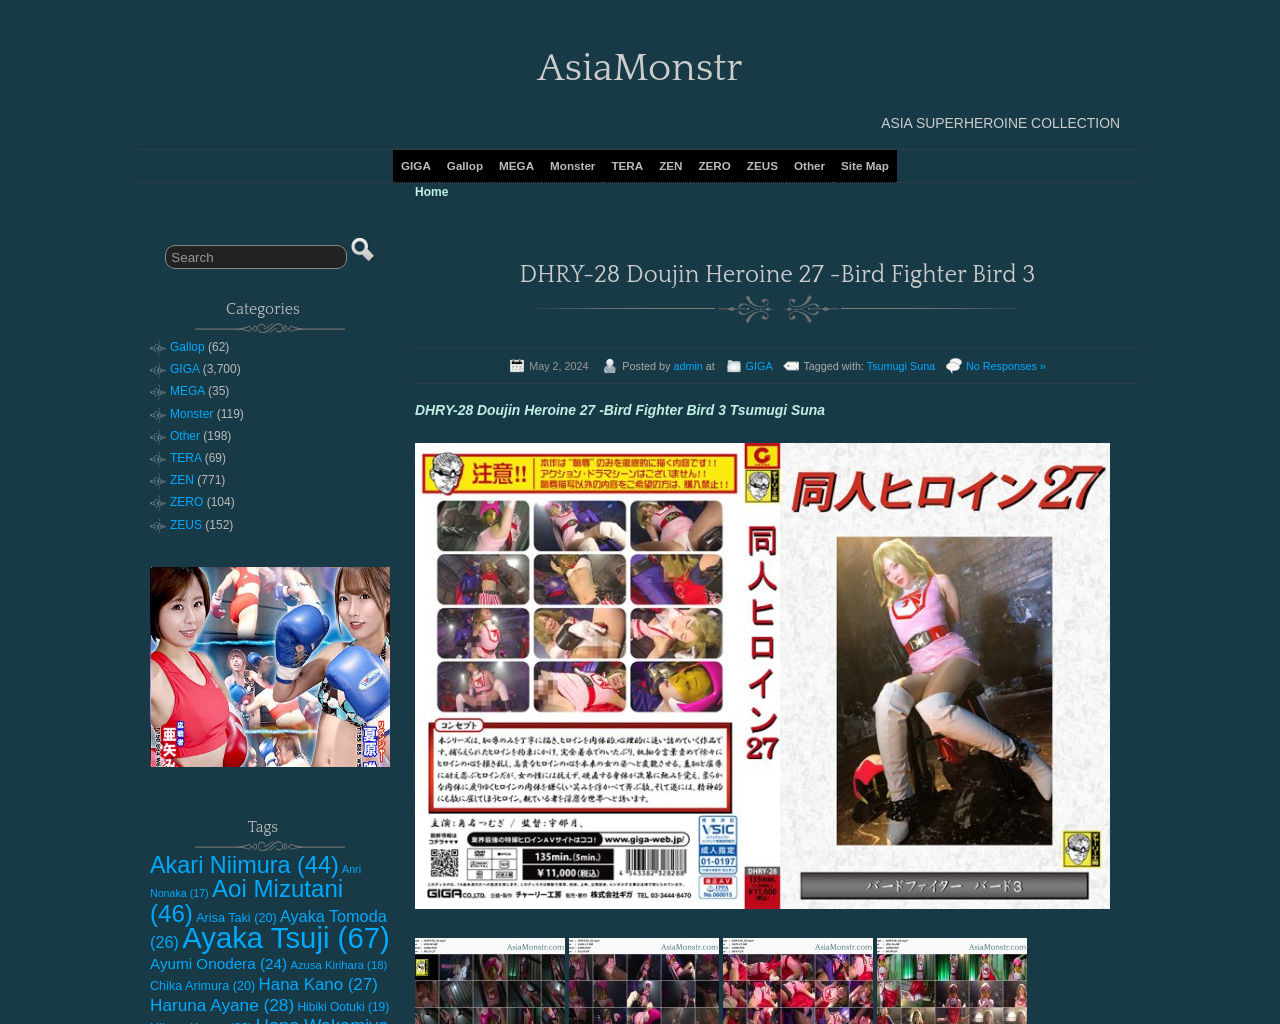 asiamonstr.com